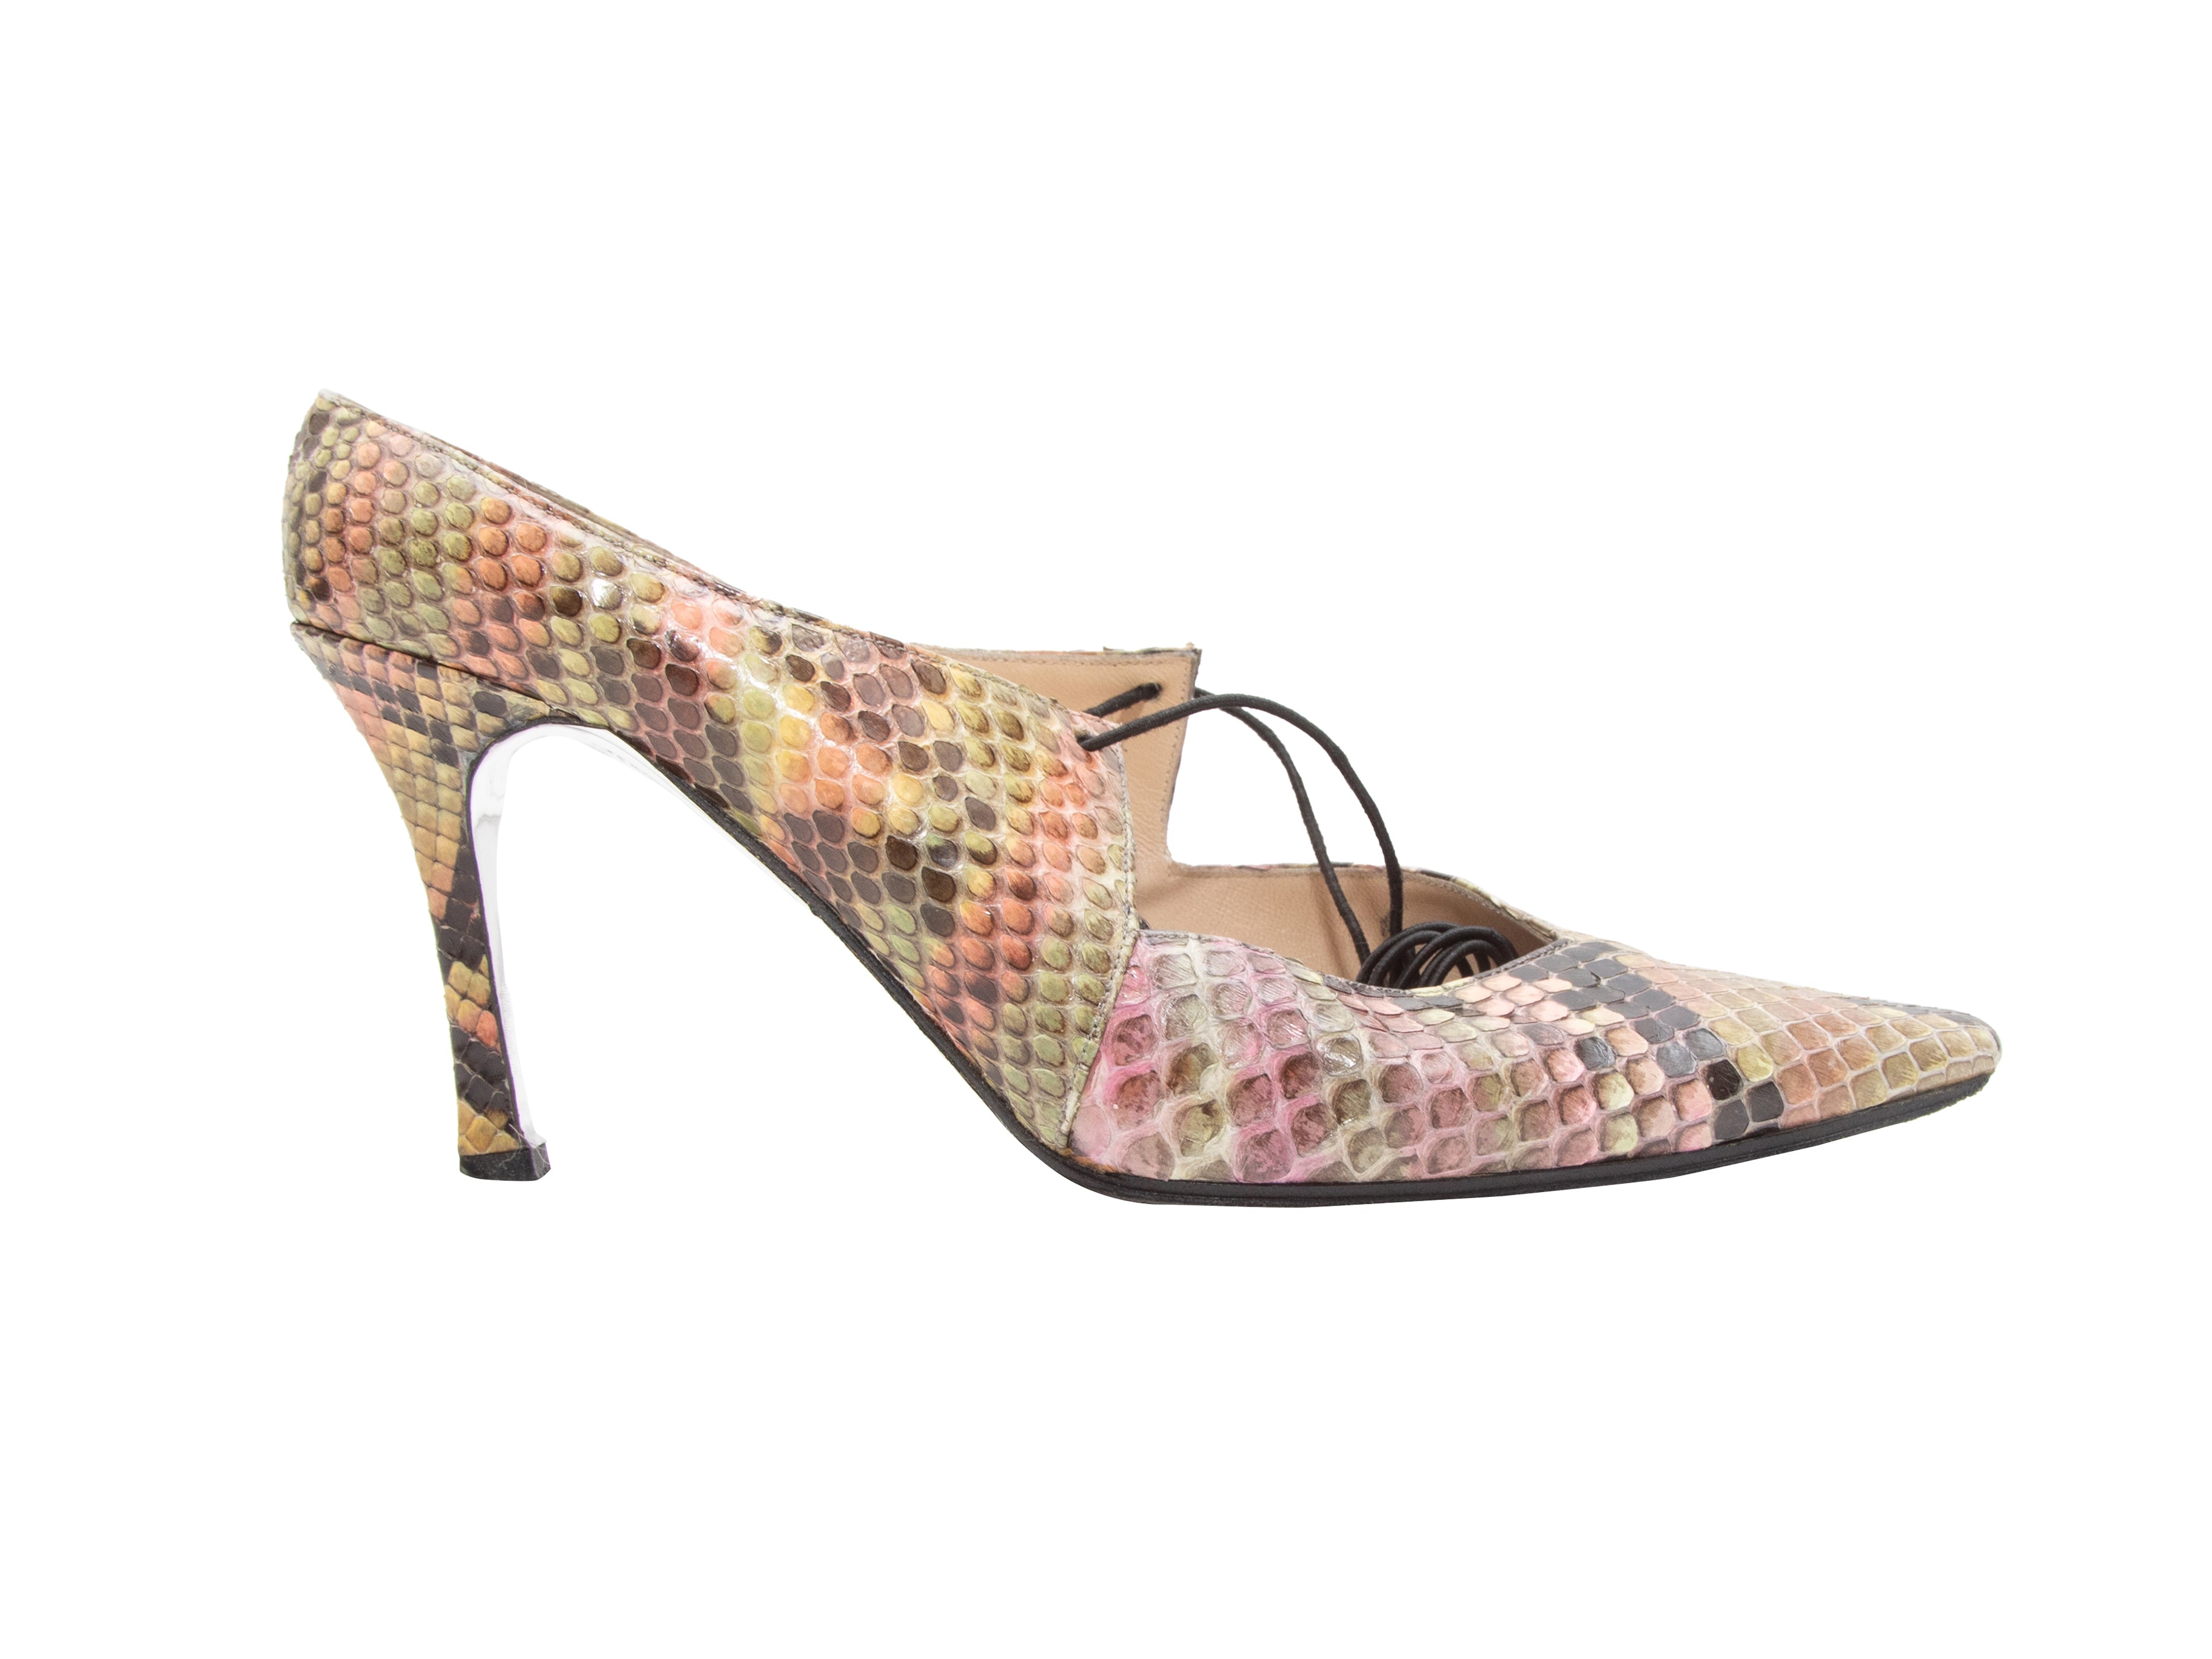 Pink & Multicolor Chanel Snakeskin Pointed-Toe Heels Size 37 - Designer Revival